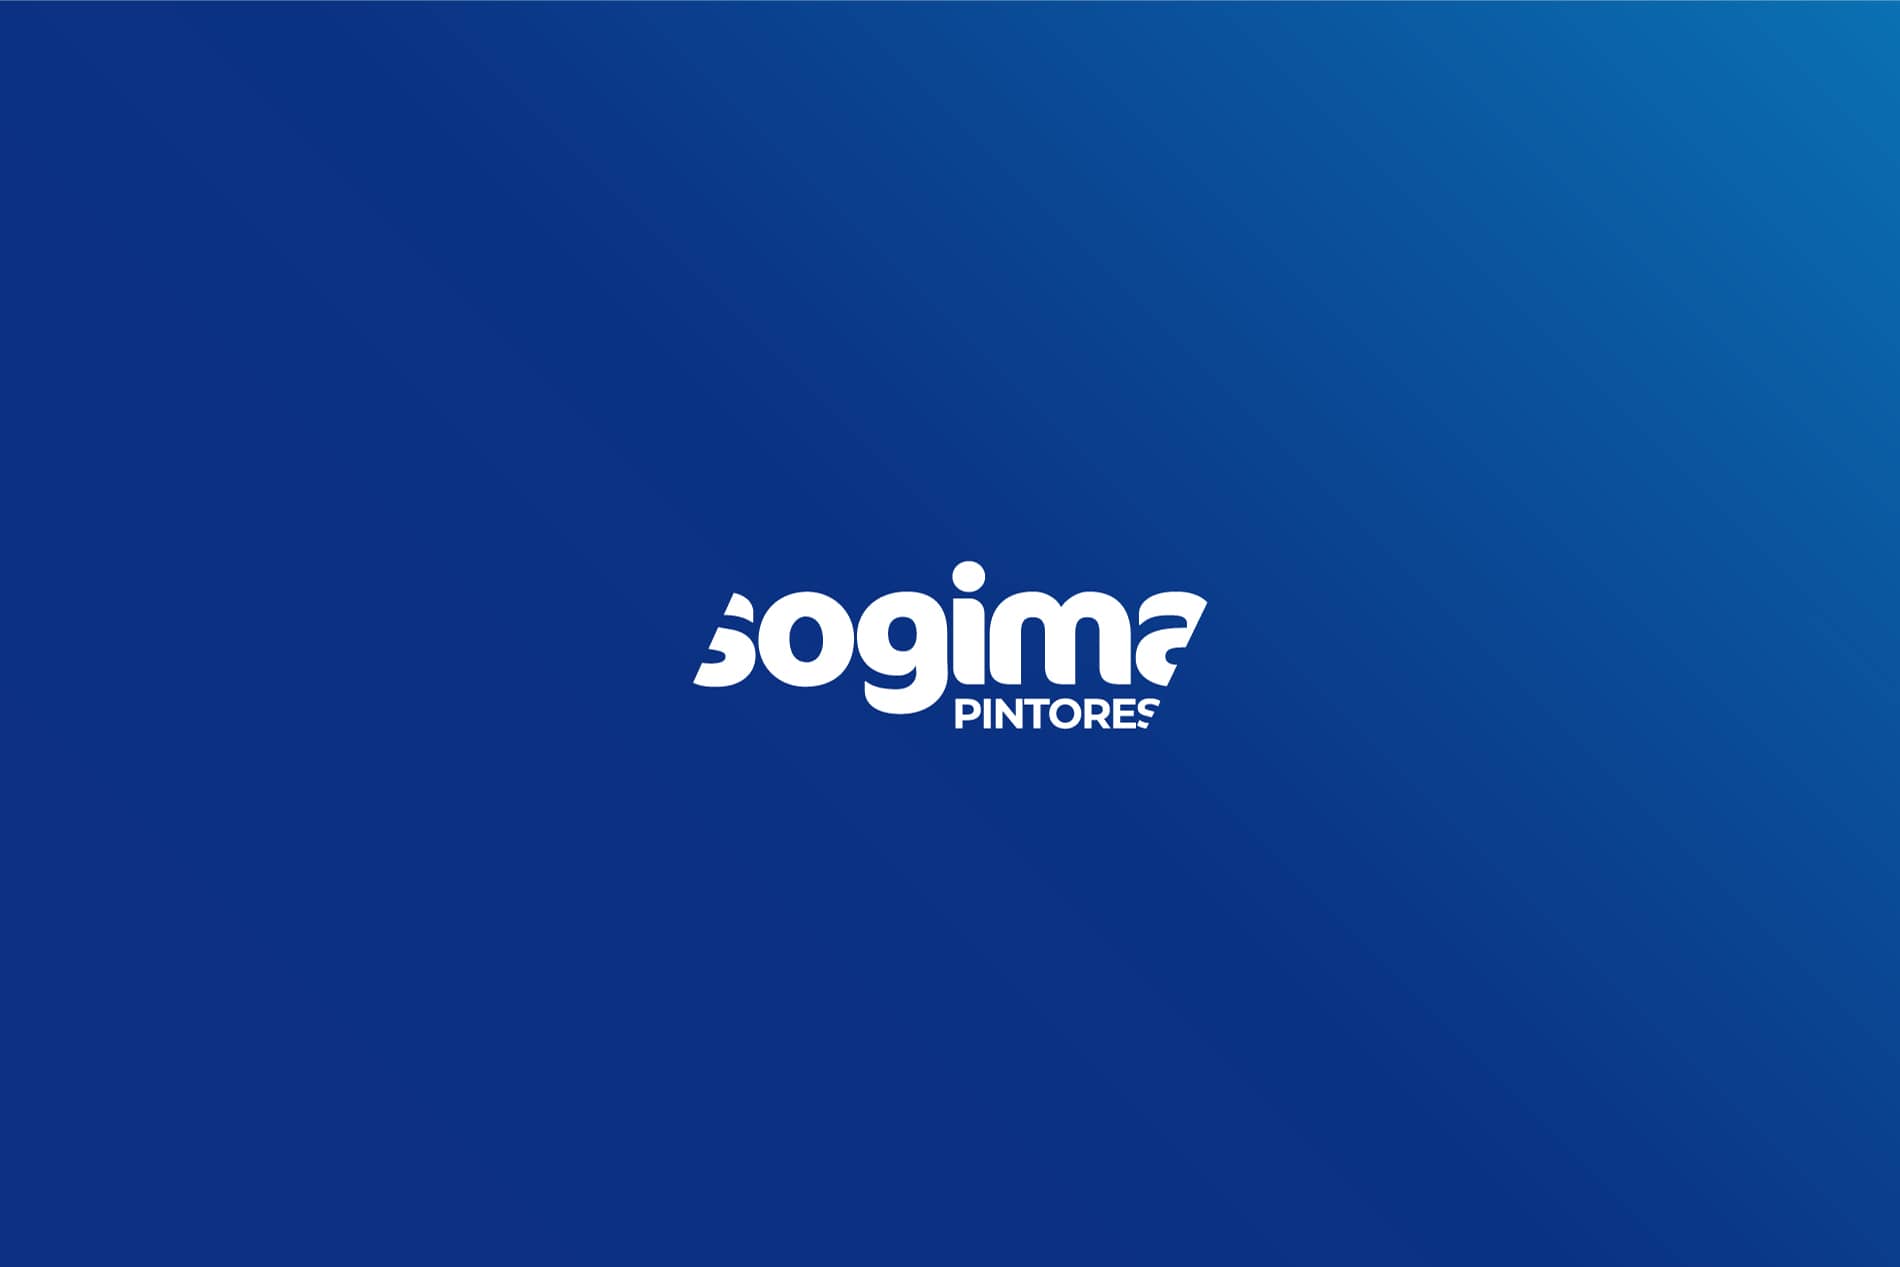 Logo blanco Sogima sobre fondo azul branding por The Acctitude diseño web